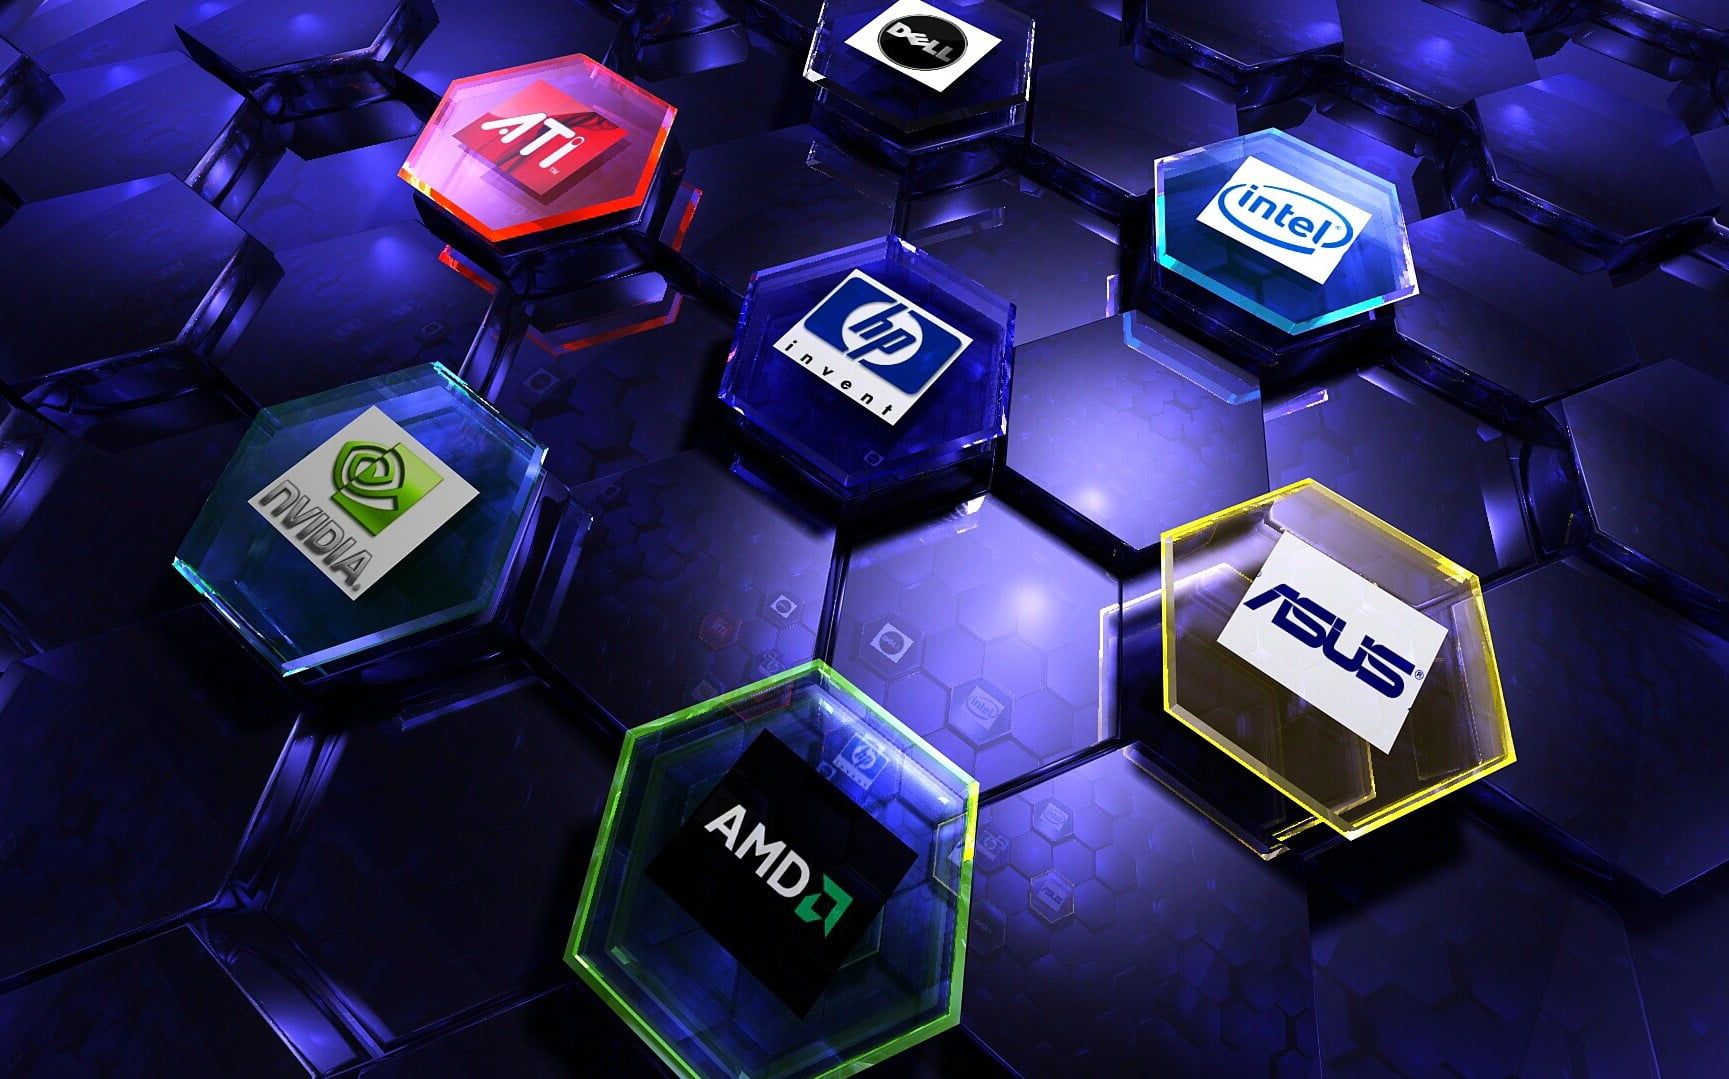 HP, Asus, Dell, Intel, ATi, Nvidia, and AMD logos, communication